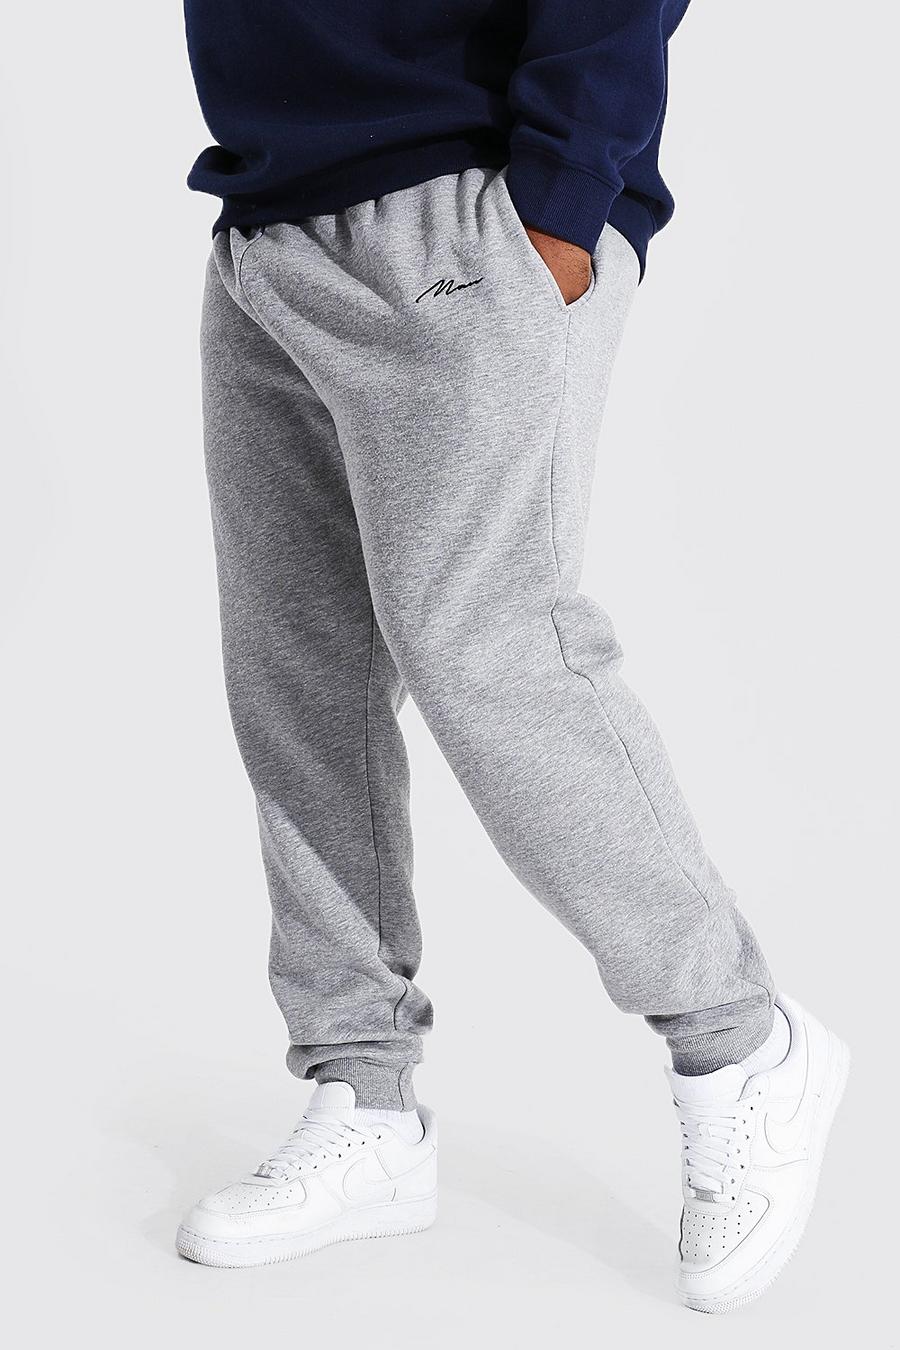 Pantalón deportivo Plus reciclado con letras MAN ajustado, Grey marl gris